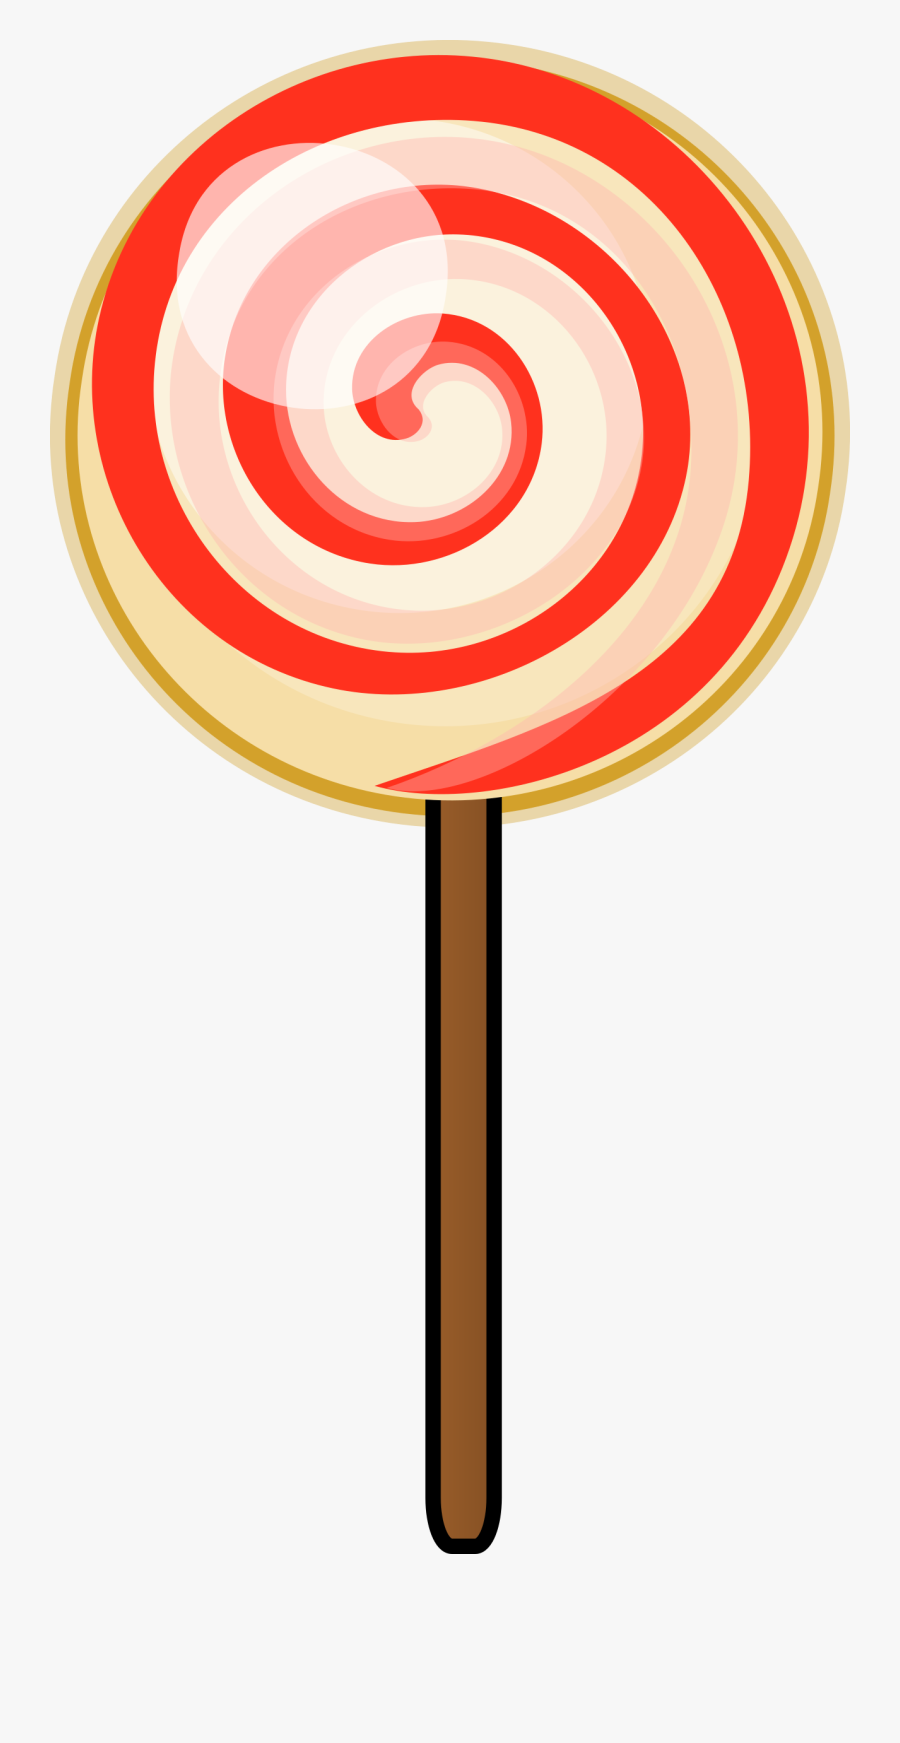 Clipart Lollipop - Lollipop Png, Transparent Clipart